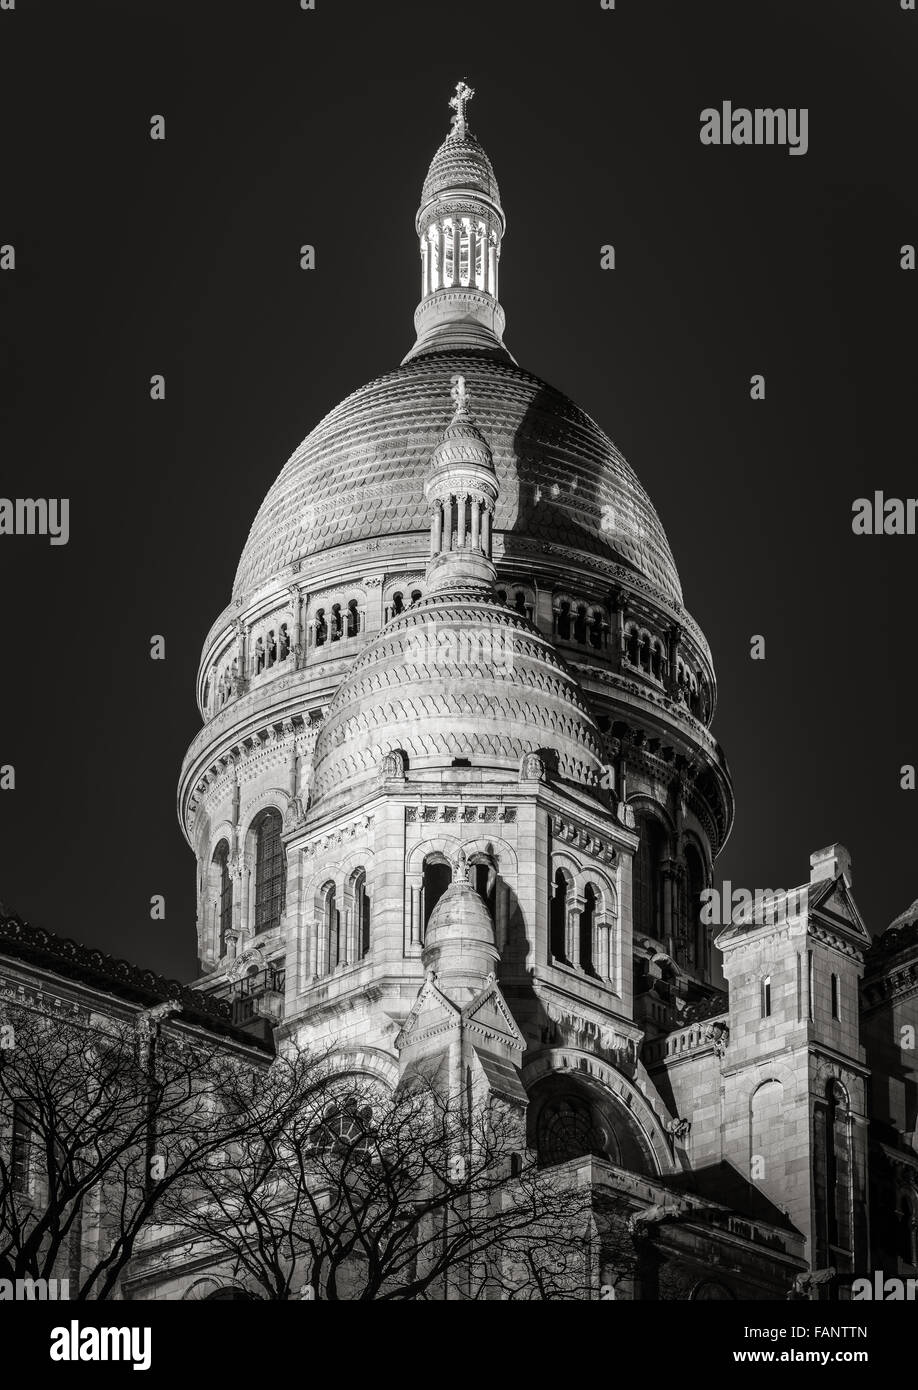 In bianco e nero consente di visualizzare delle cupole della basilica del Sacre Coeur (Sacro Cuore) illuminata di notte a Montmartre, Paris, Francia. Foto Stock